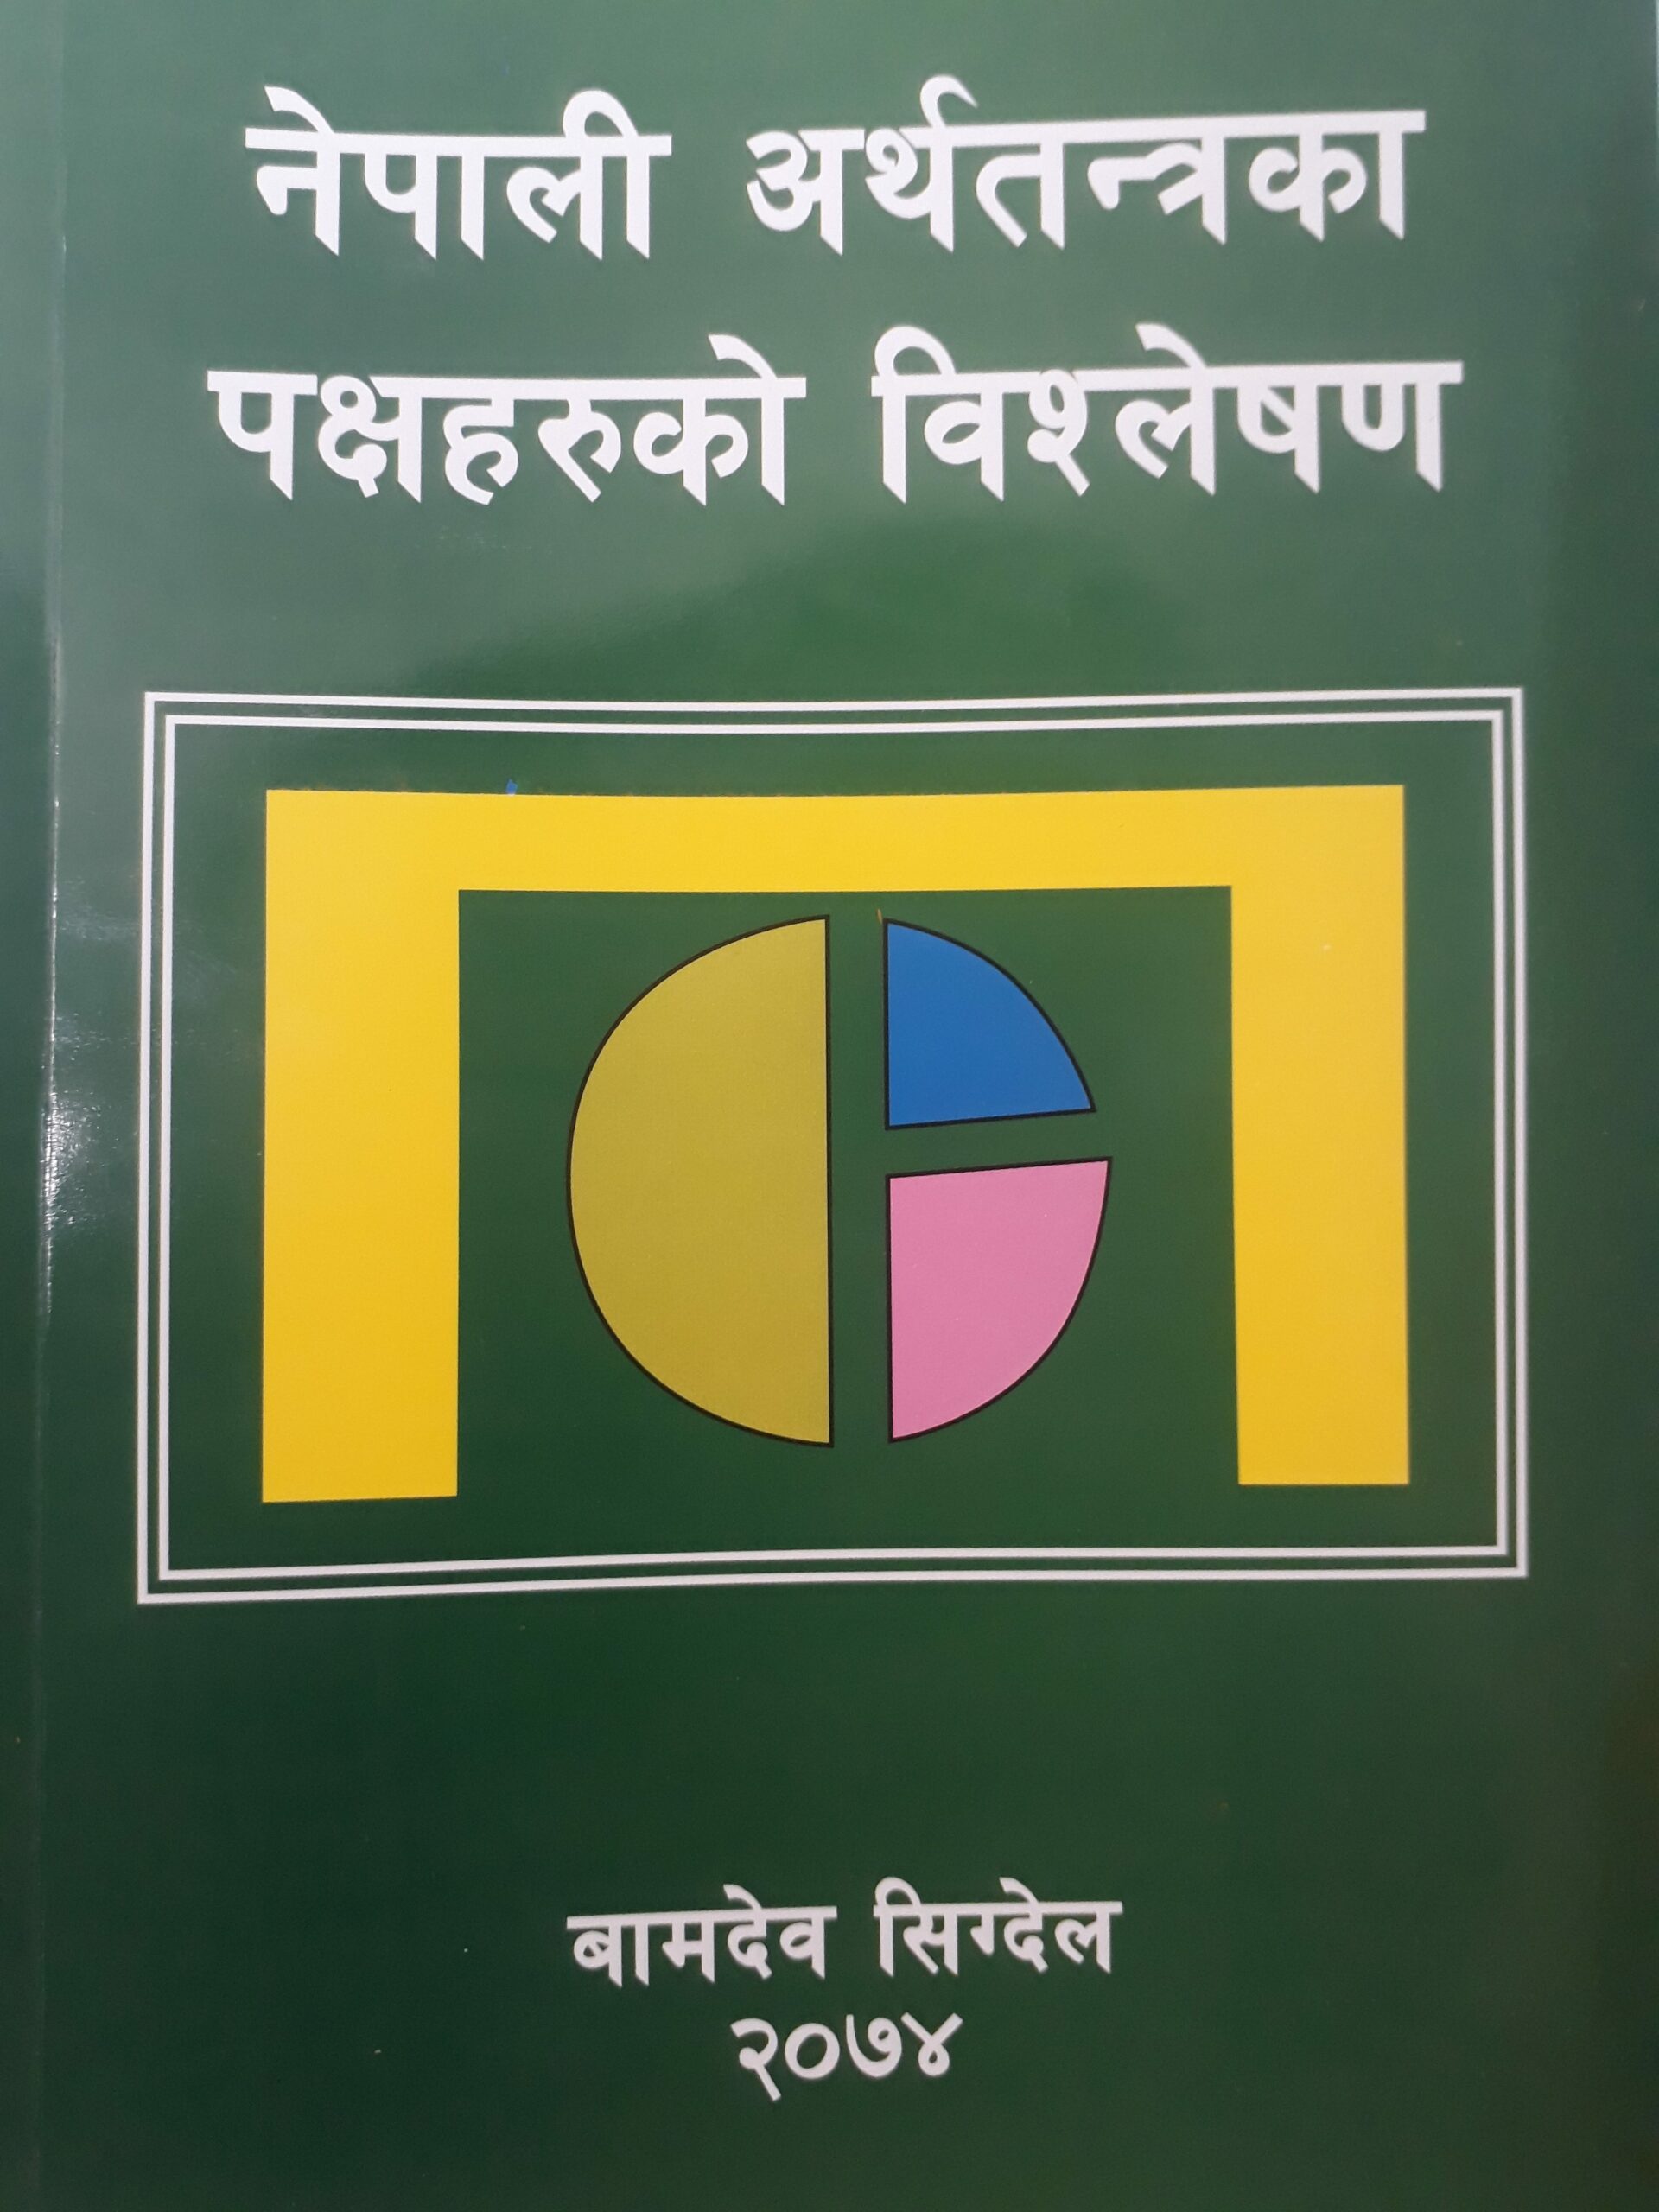 नेपाली अर्थतन्त्रका पक्षहरुको विश्लेषण नामक किताब बजारमा